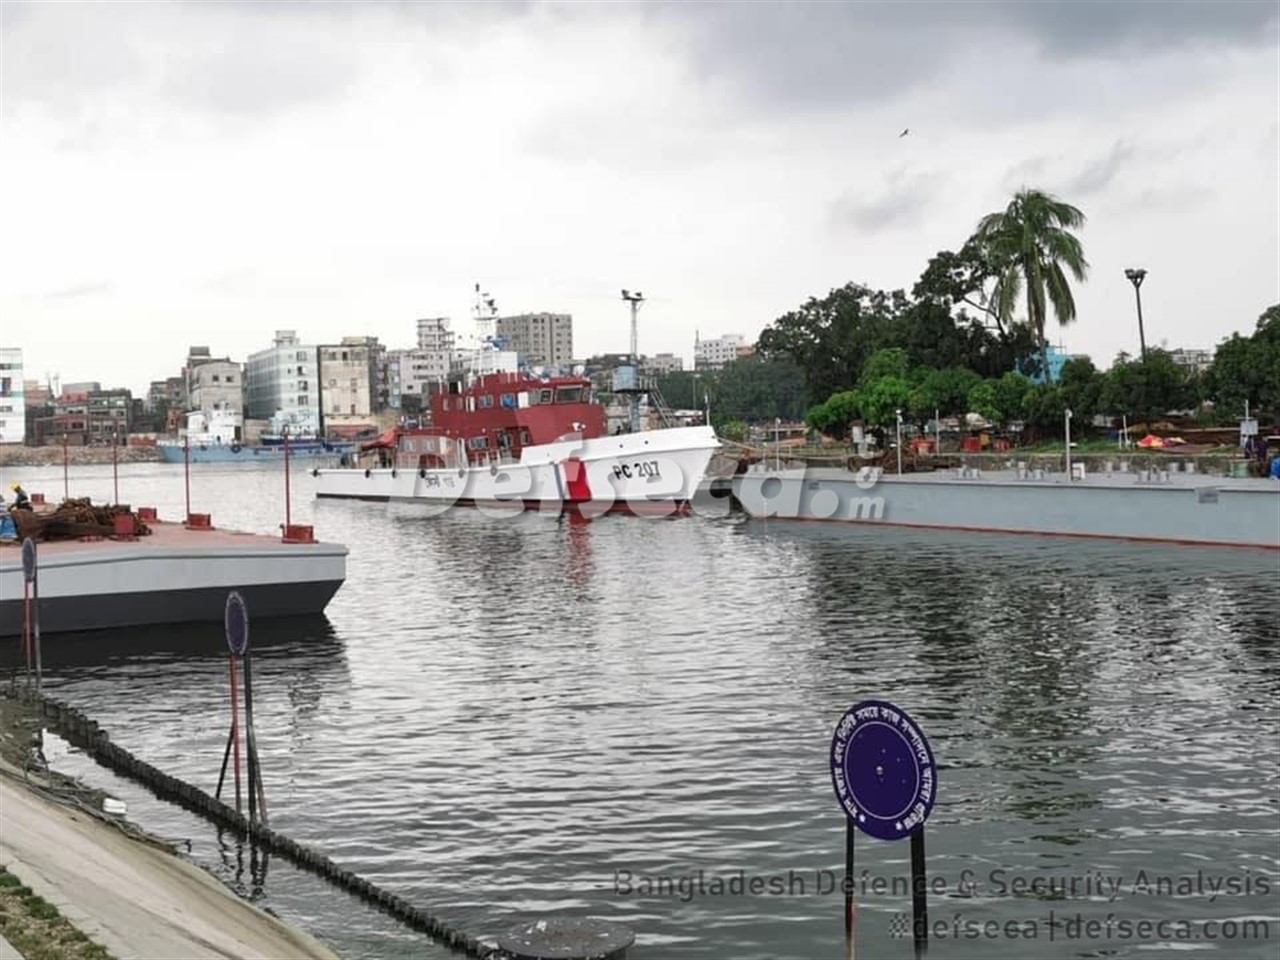 New Inshore Patrol Vessels built at DEW for Bangladesh Coast Guard